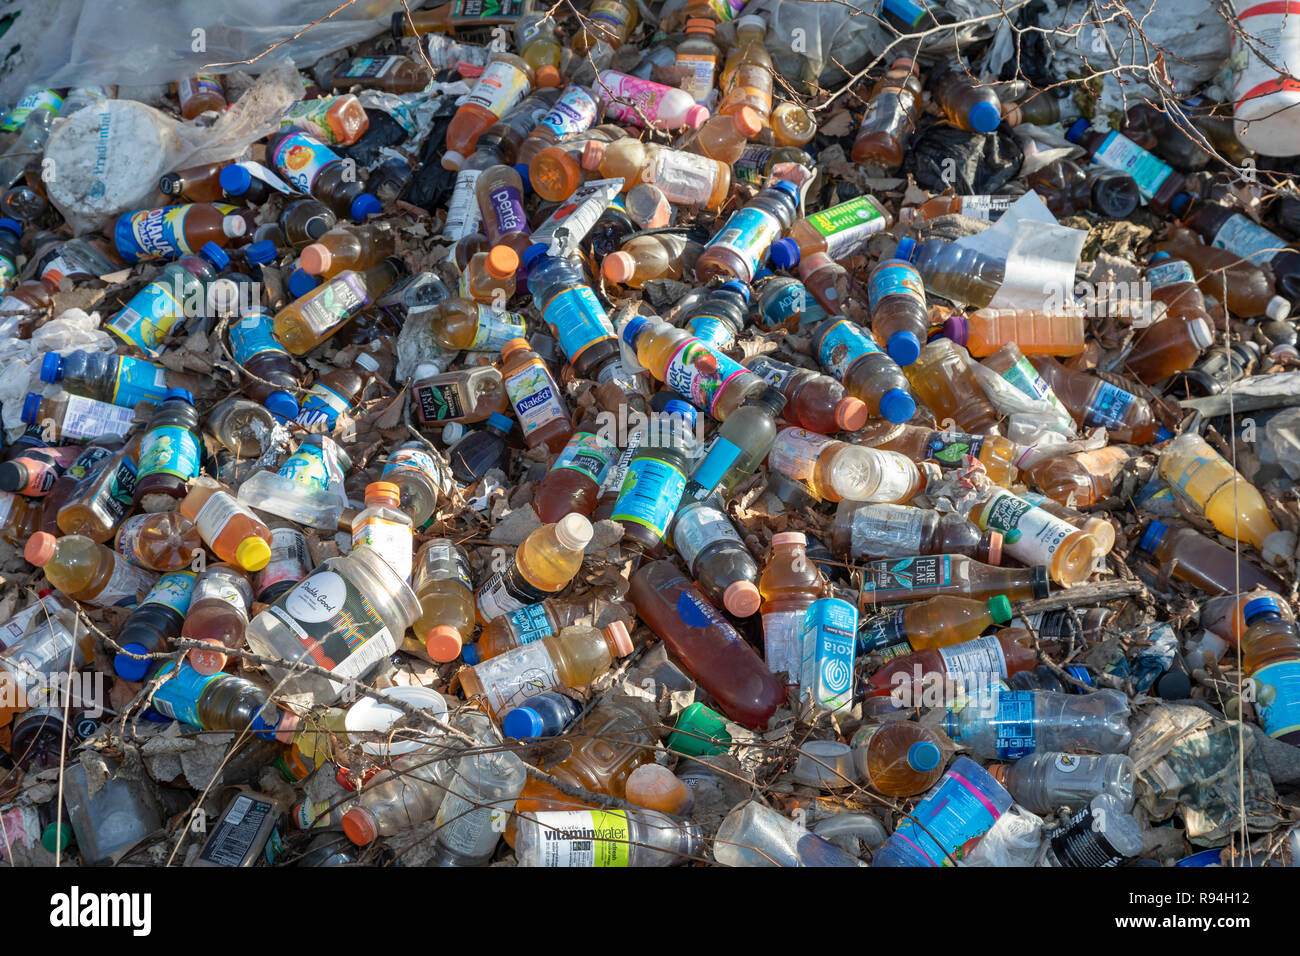 Detroit, Michigan - Plusieurs centaines de bouteilles et boîtes de dumping illégalement dans une zone boisée près du centre-ville. Beaucoup sont du jus ou de l'eau des récipients qui sont n Banque D'Images